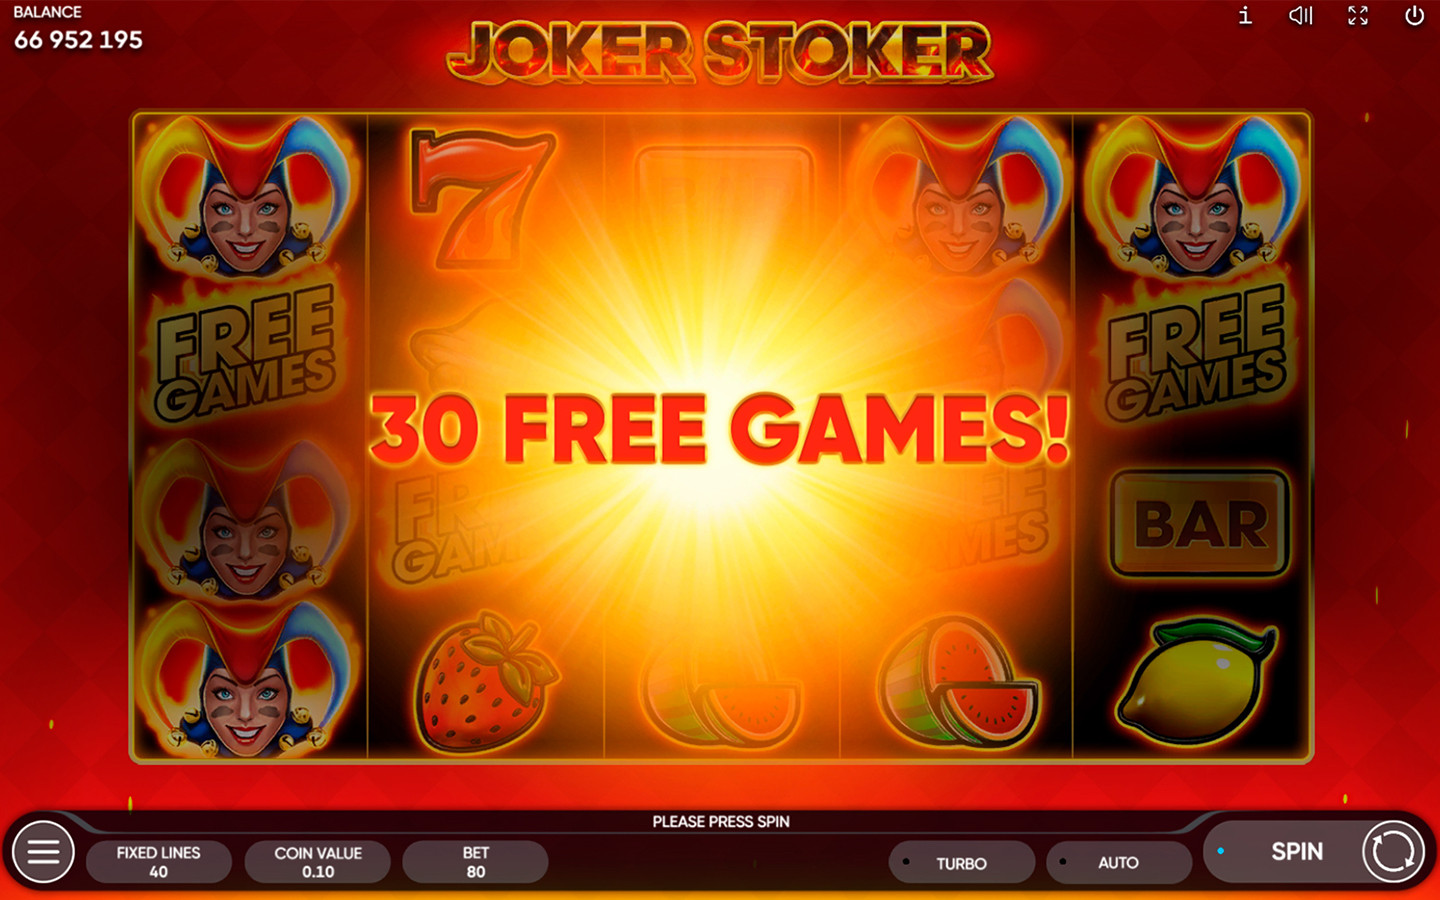 iGAMING DEVELOPER | Play Joker Stoker now!